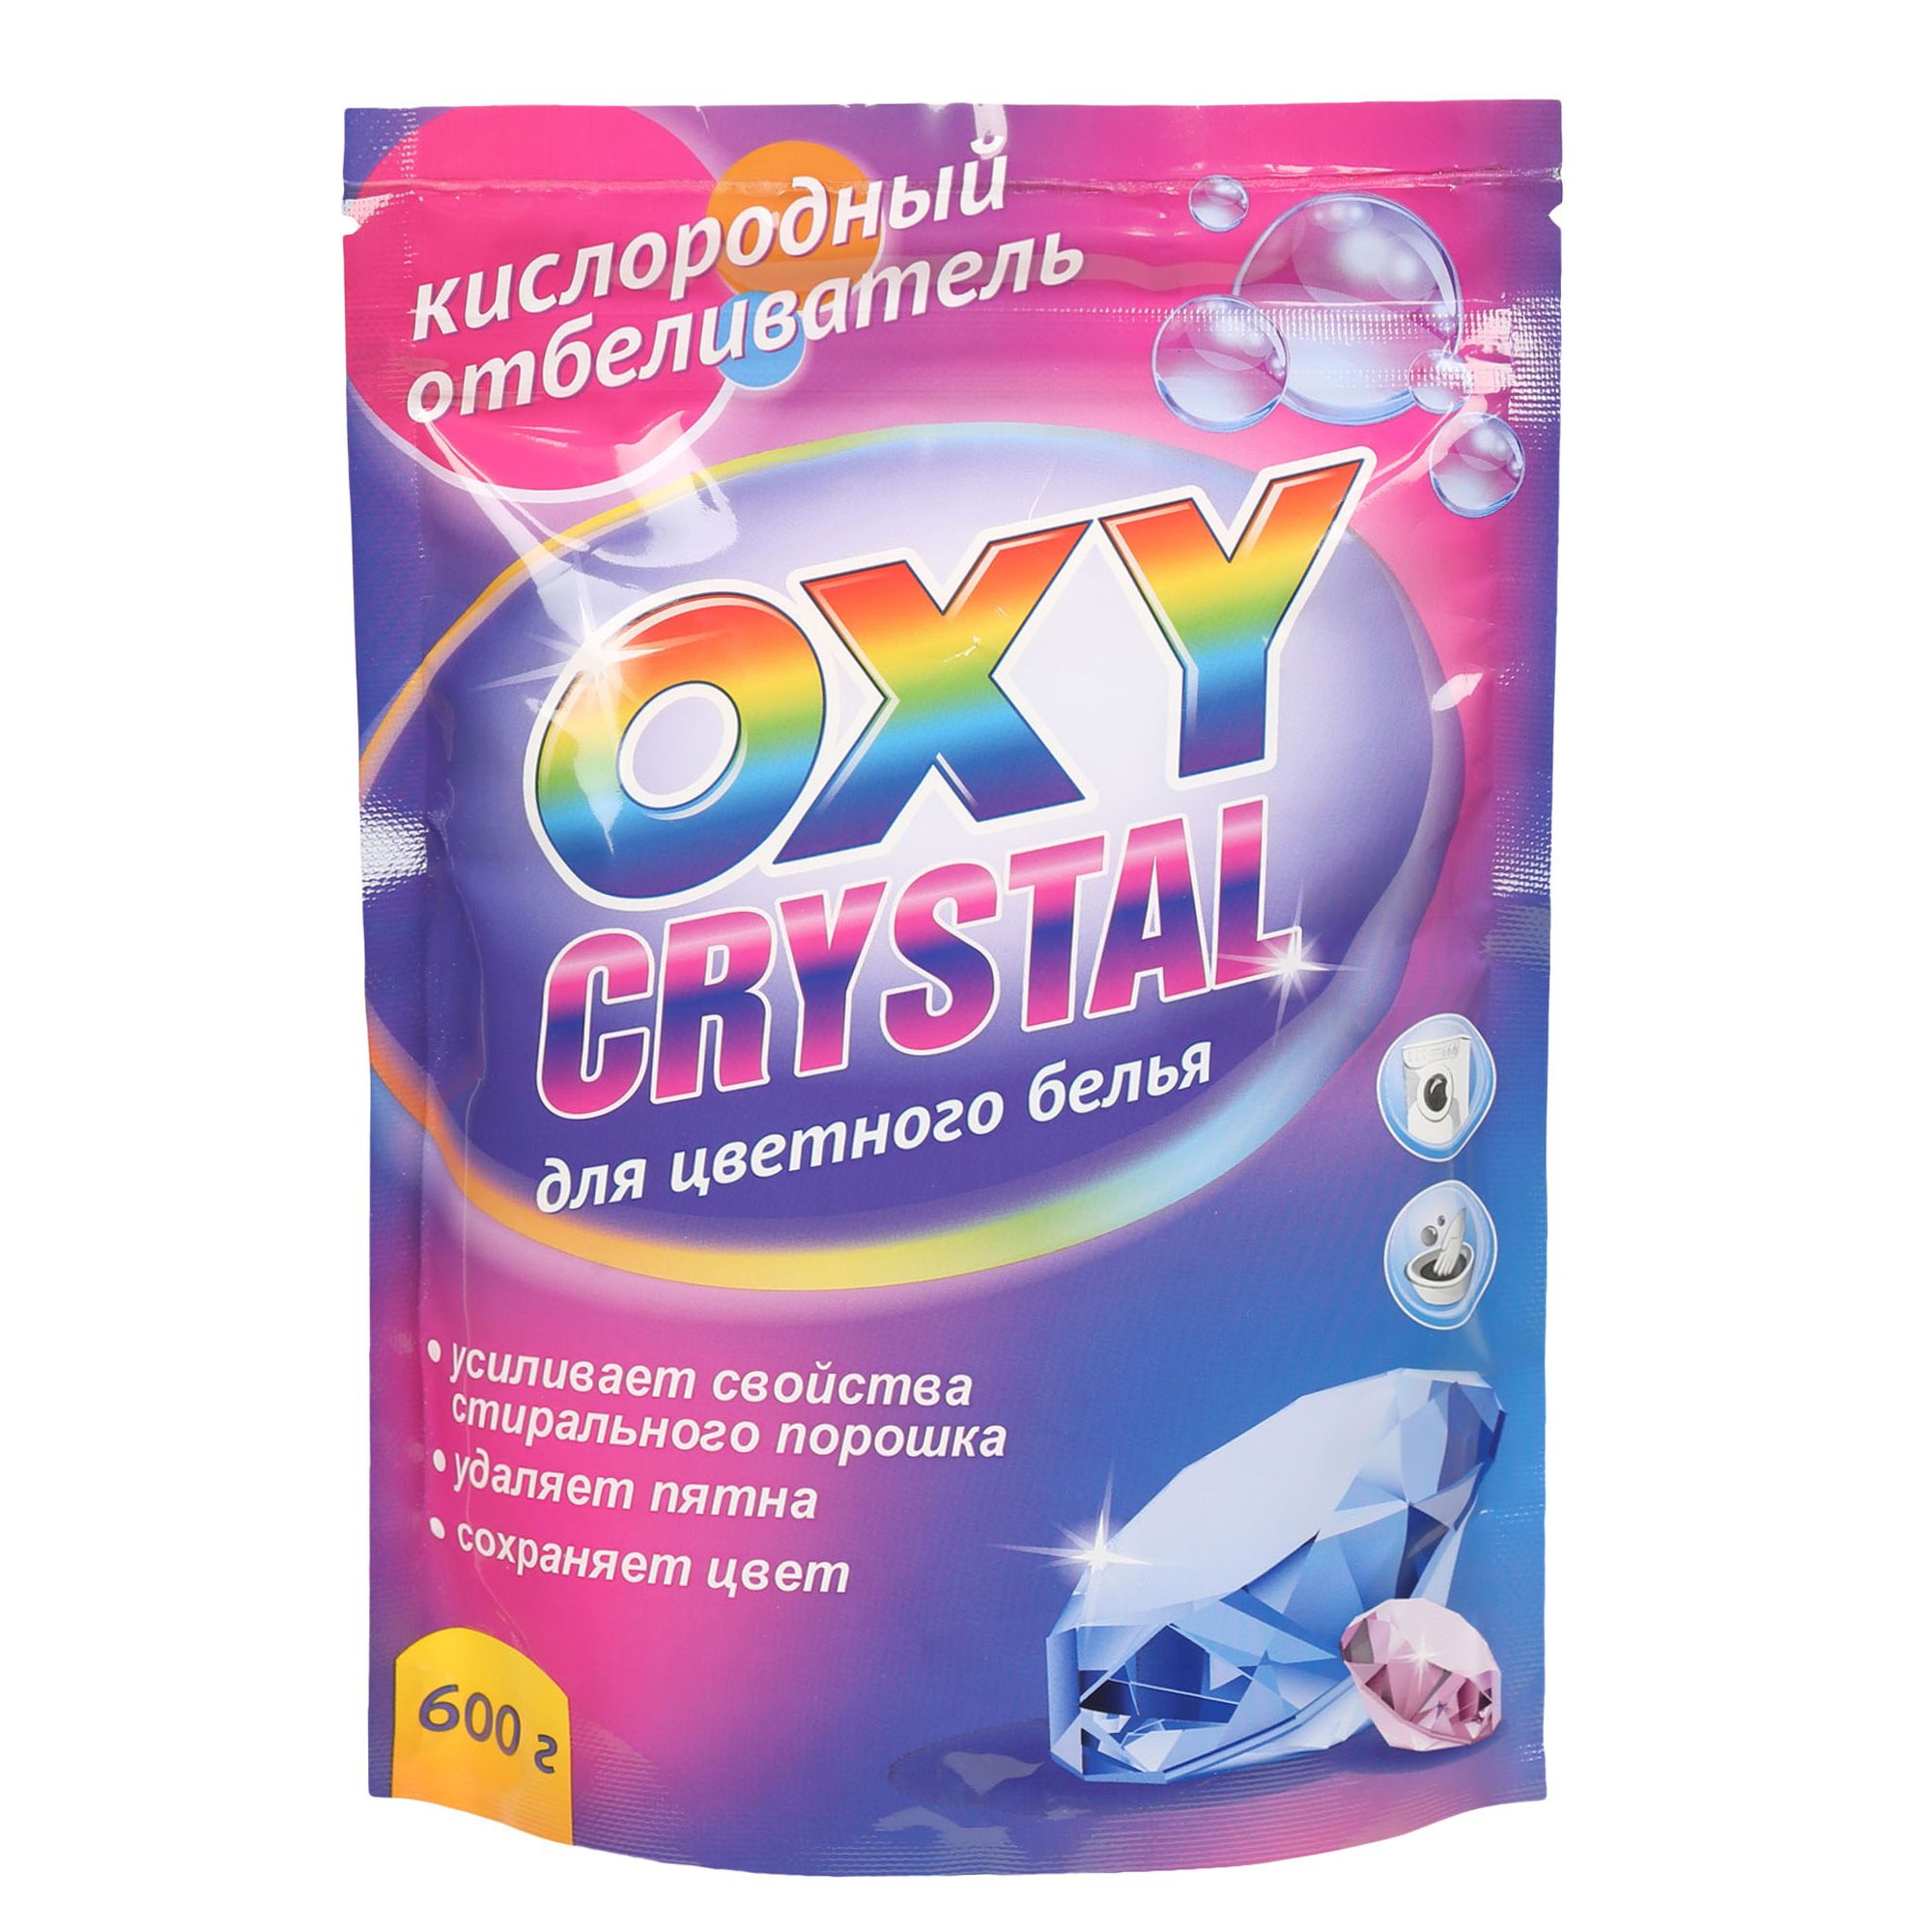 Oxy crystal. Кислородный отбеливатель oxy Crystal 600г. Кислородный отбеливатель oxy Crystal для цветного белья 600 г.. Кислородный отбеливатель oxy Crystal для белого белья 600 г. Greenfield кислородный отбеливатель oxy Crystal д/цветного 600г..